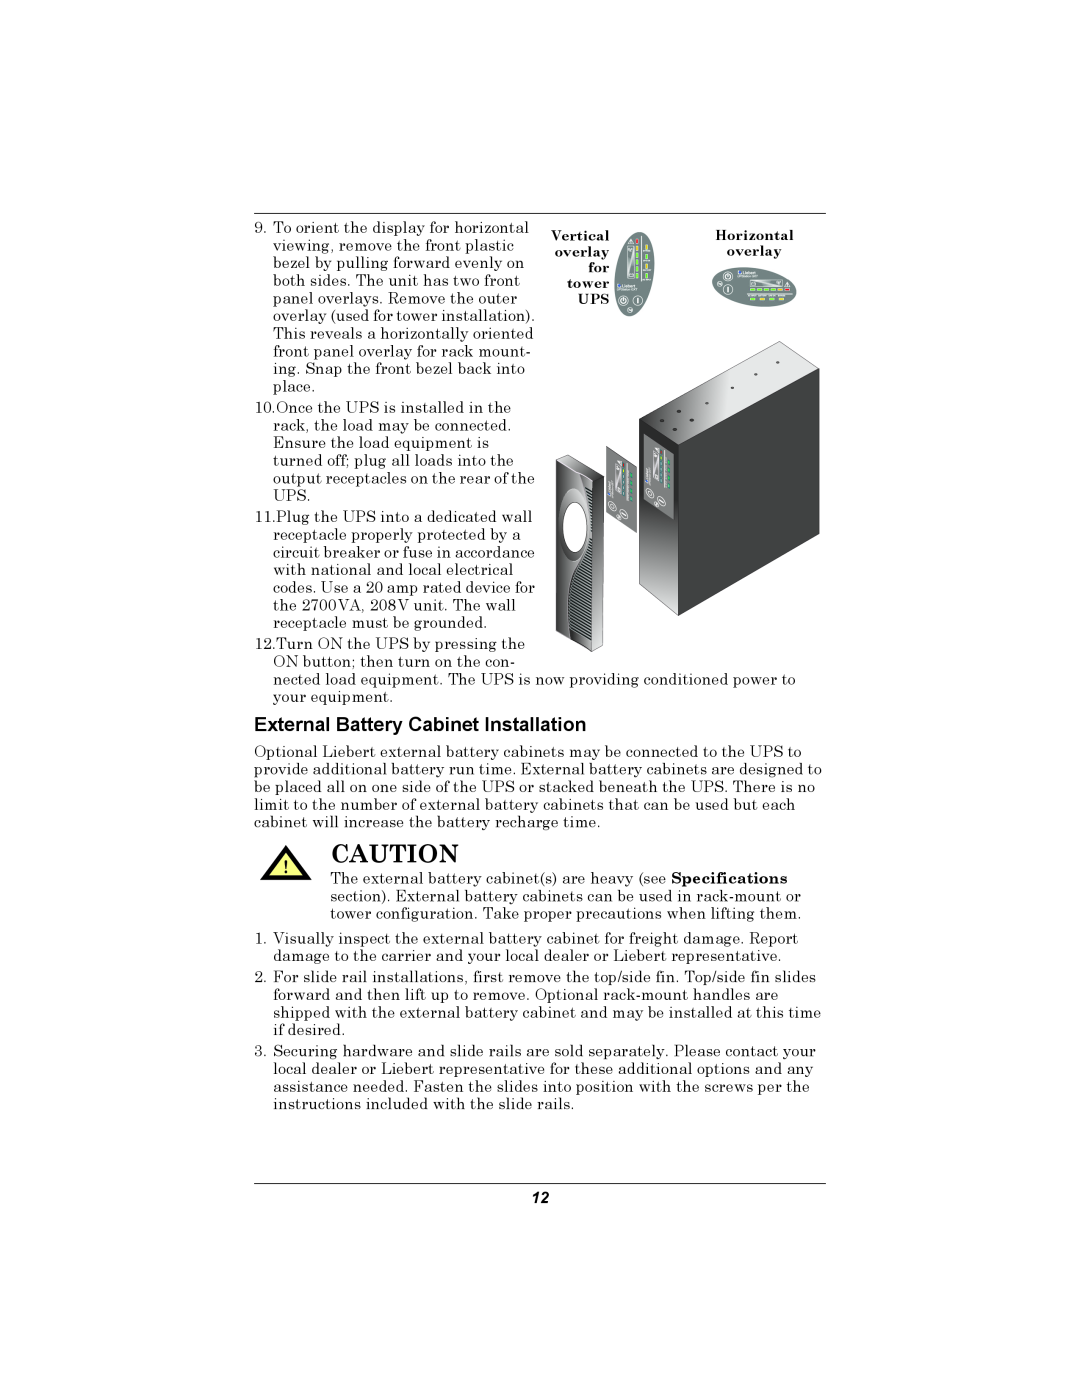 Emerson GXT2U user manual External Battery Cabinet Installation 